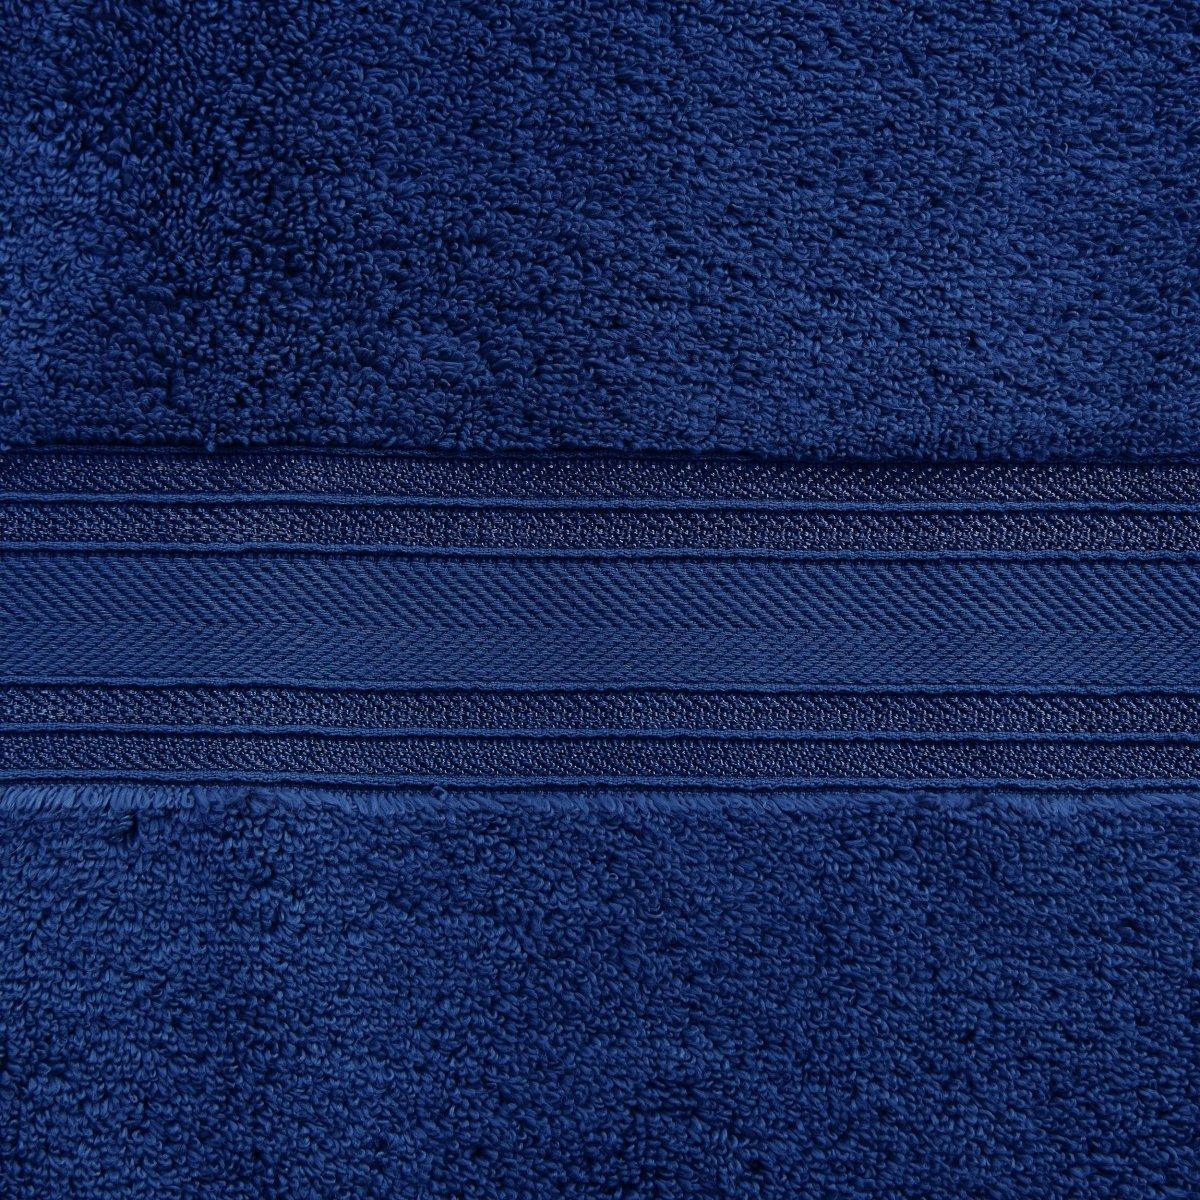 4 Piece Soft Cotton Bath Towel Set 100% Cotton | Spirit Linen - Navy Blue